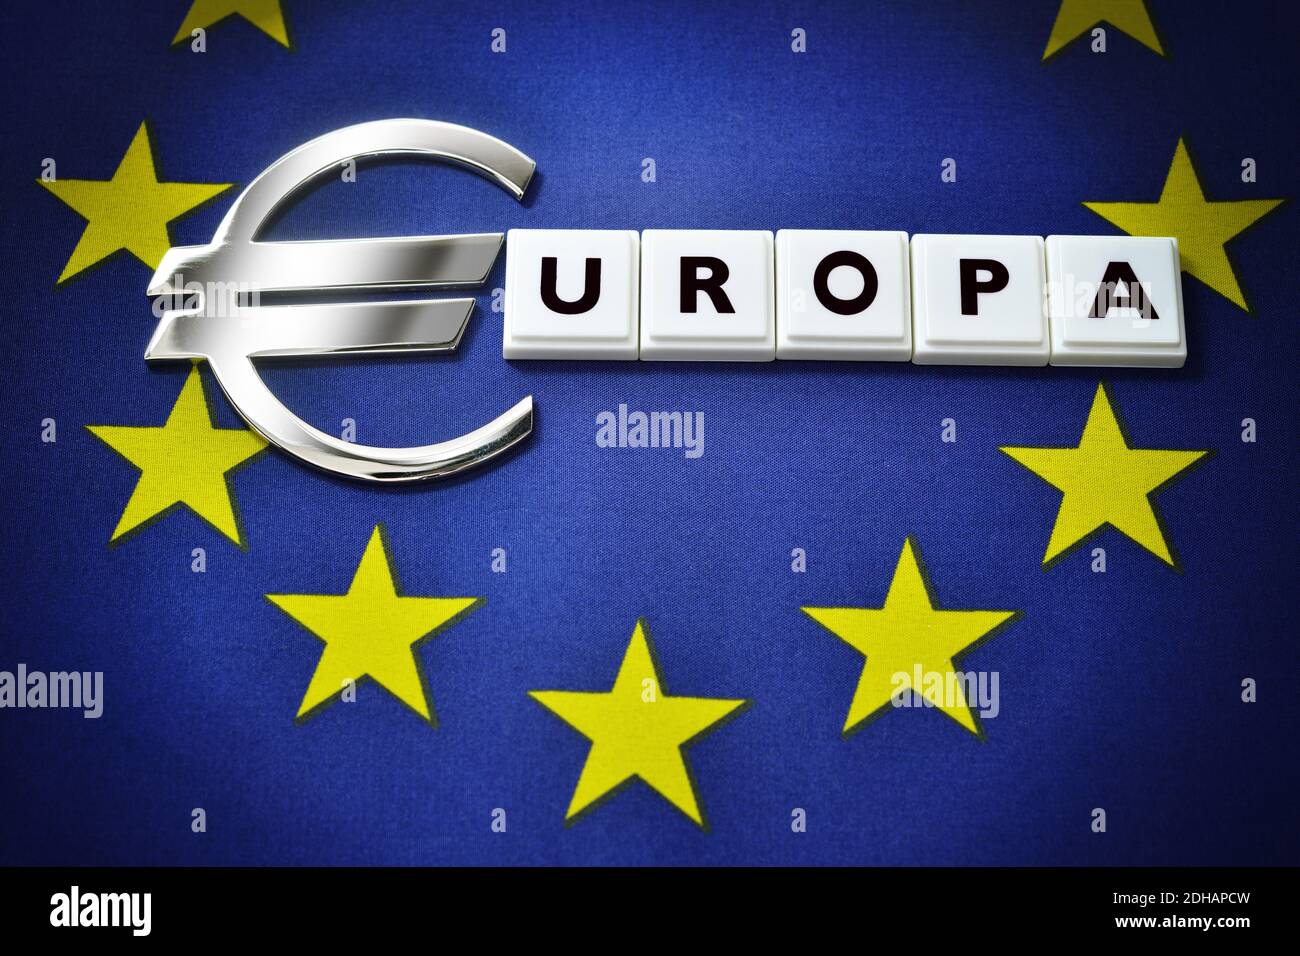 Eurozeichen auf EU-Fahne, EU-Haushalt Stock Photo